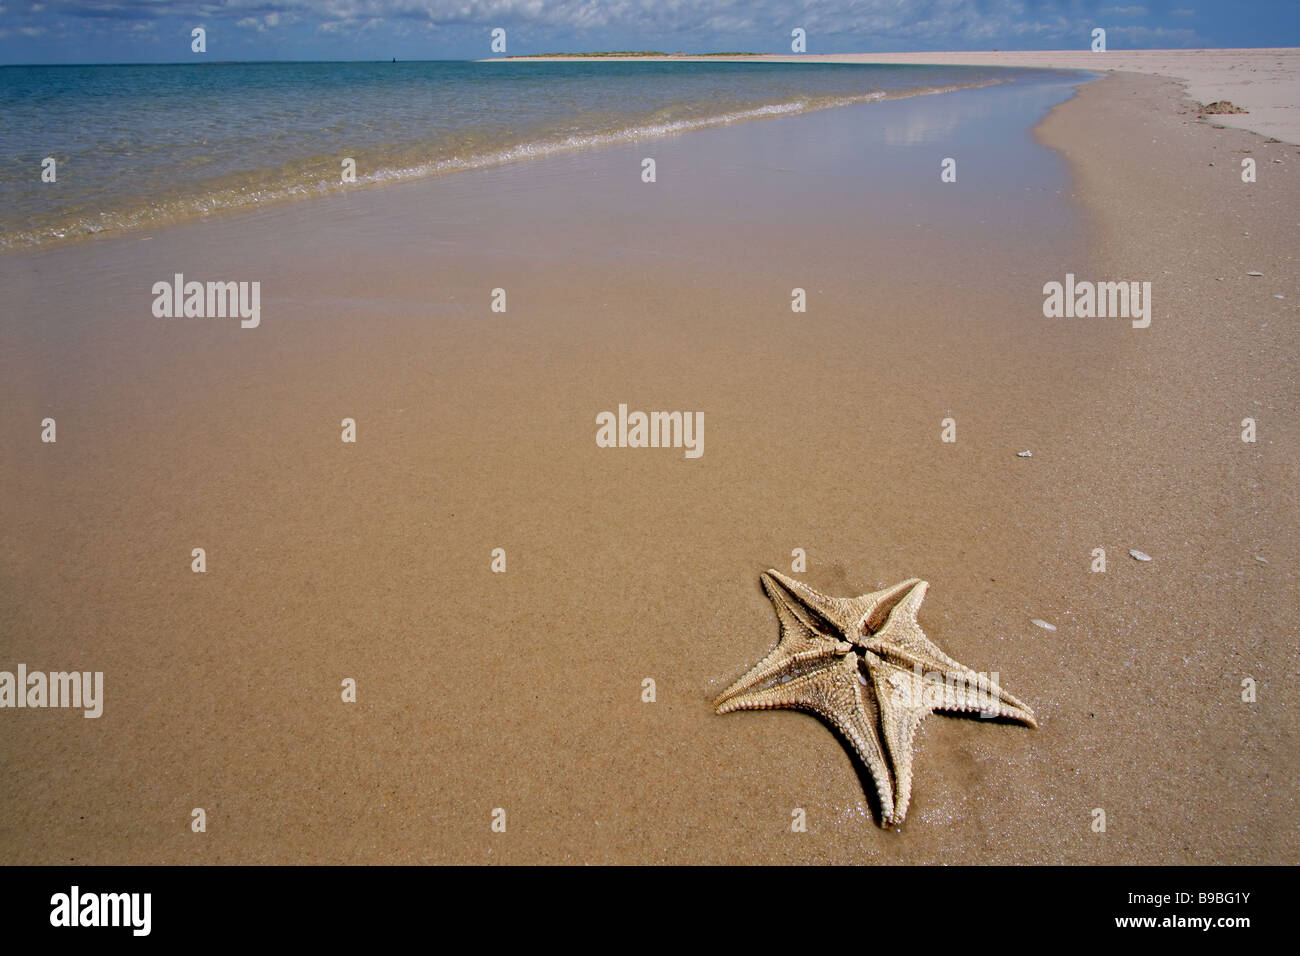 New Scenic 5 posti spiaggia tropicale con stelle marine in primo piano, Mozambico, Sud Africa Foto Stock